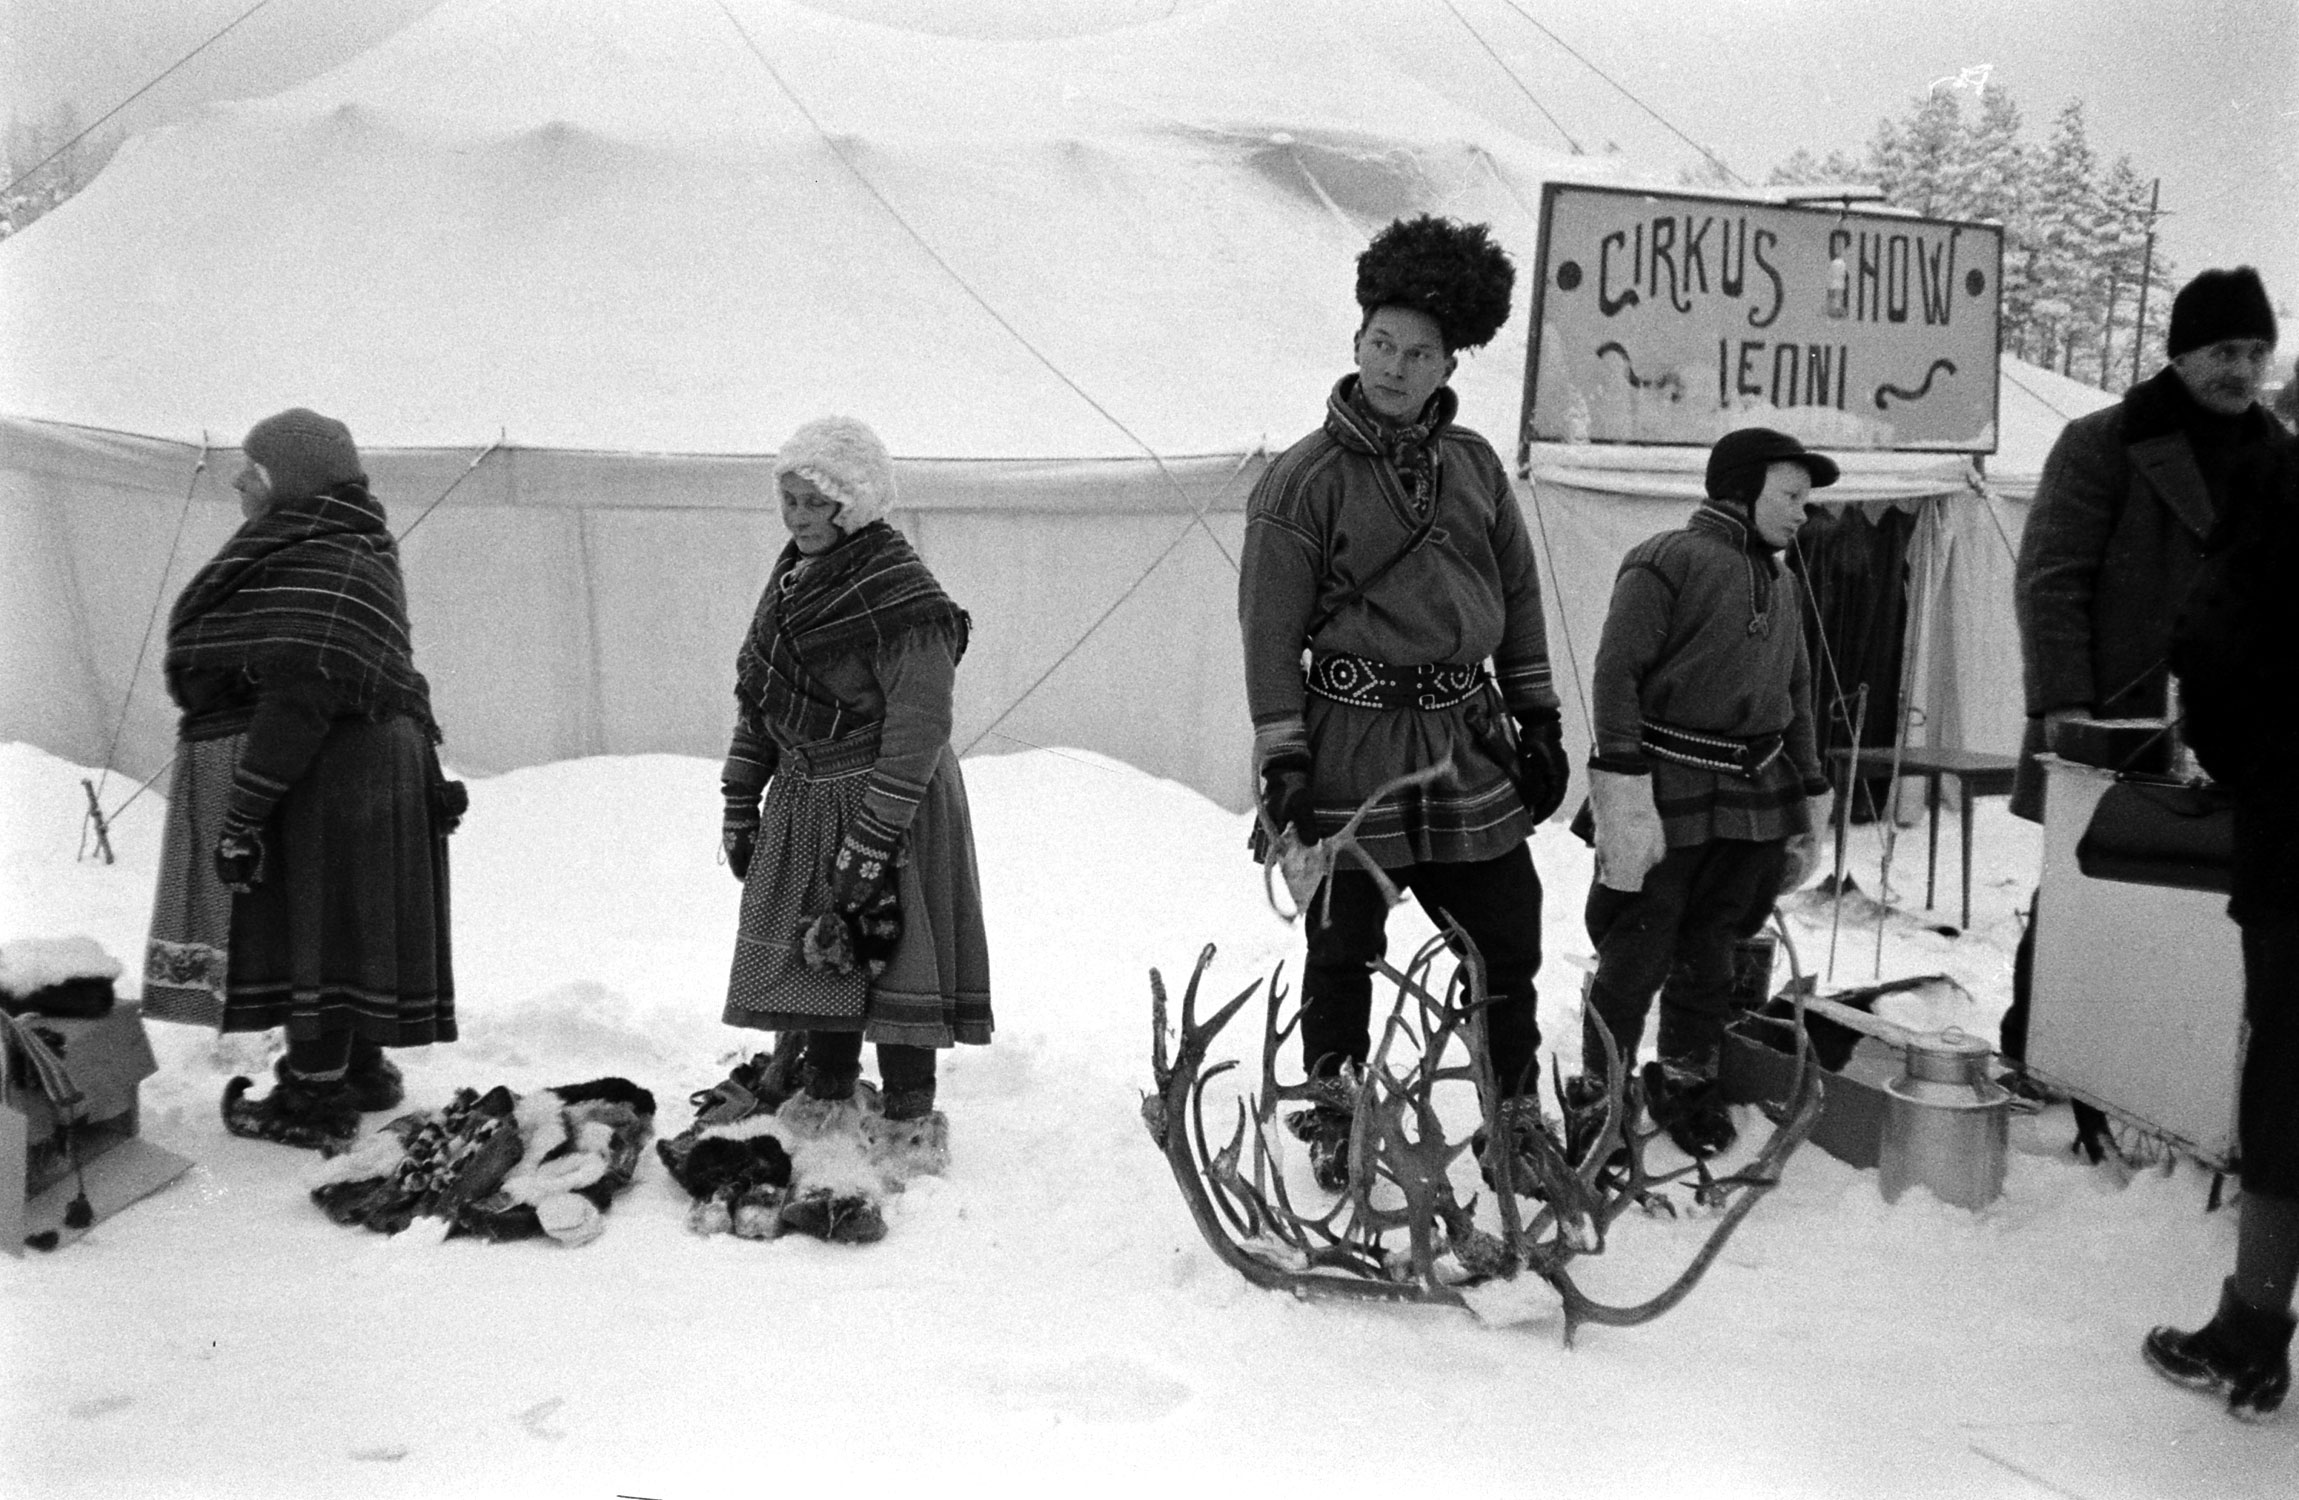 The 350th annual Sami Jokkmokk Market in Sweden, 1955.